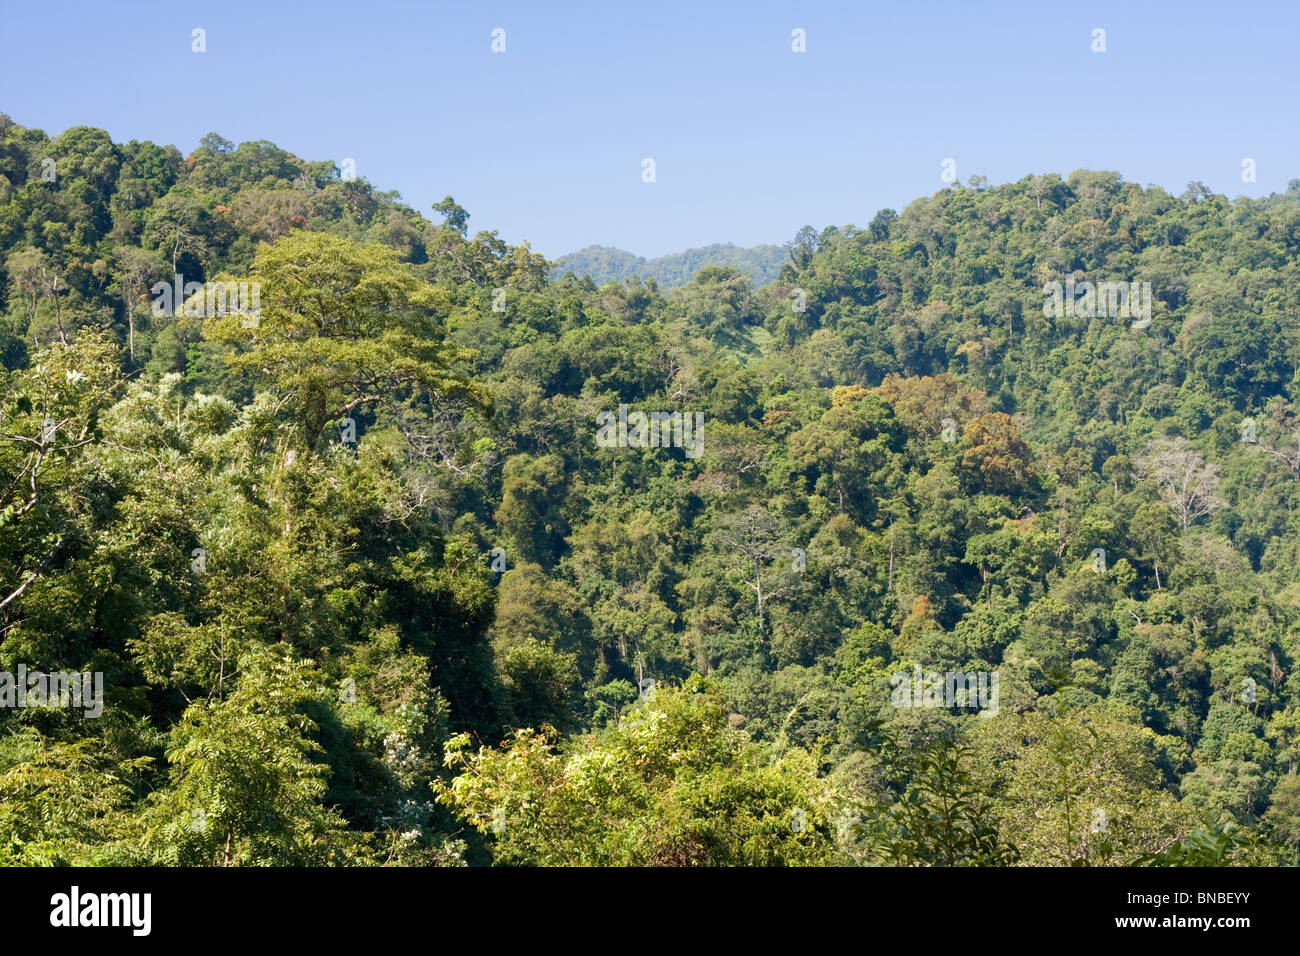 Tropical rainforest in Kaeng Krachan National Park, Thailand Stock Photo